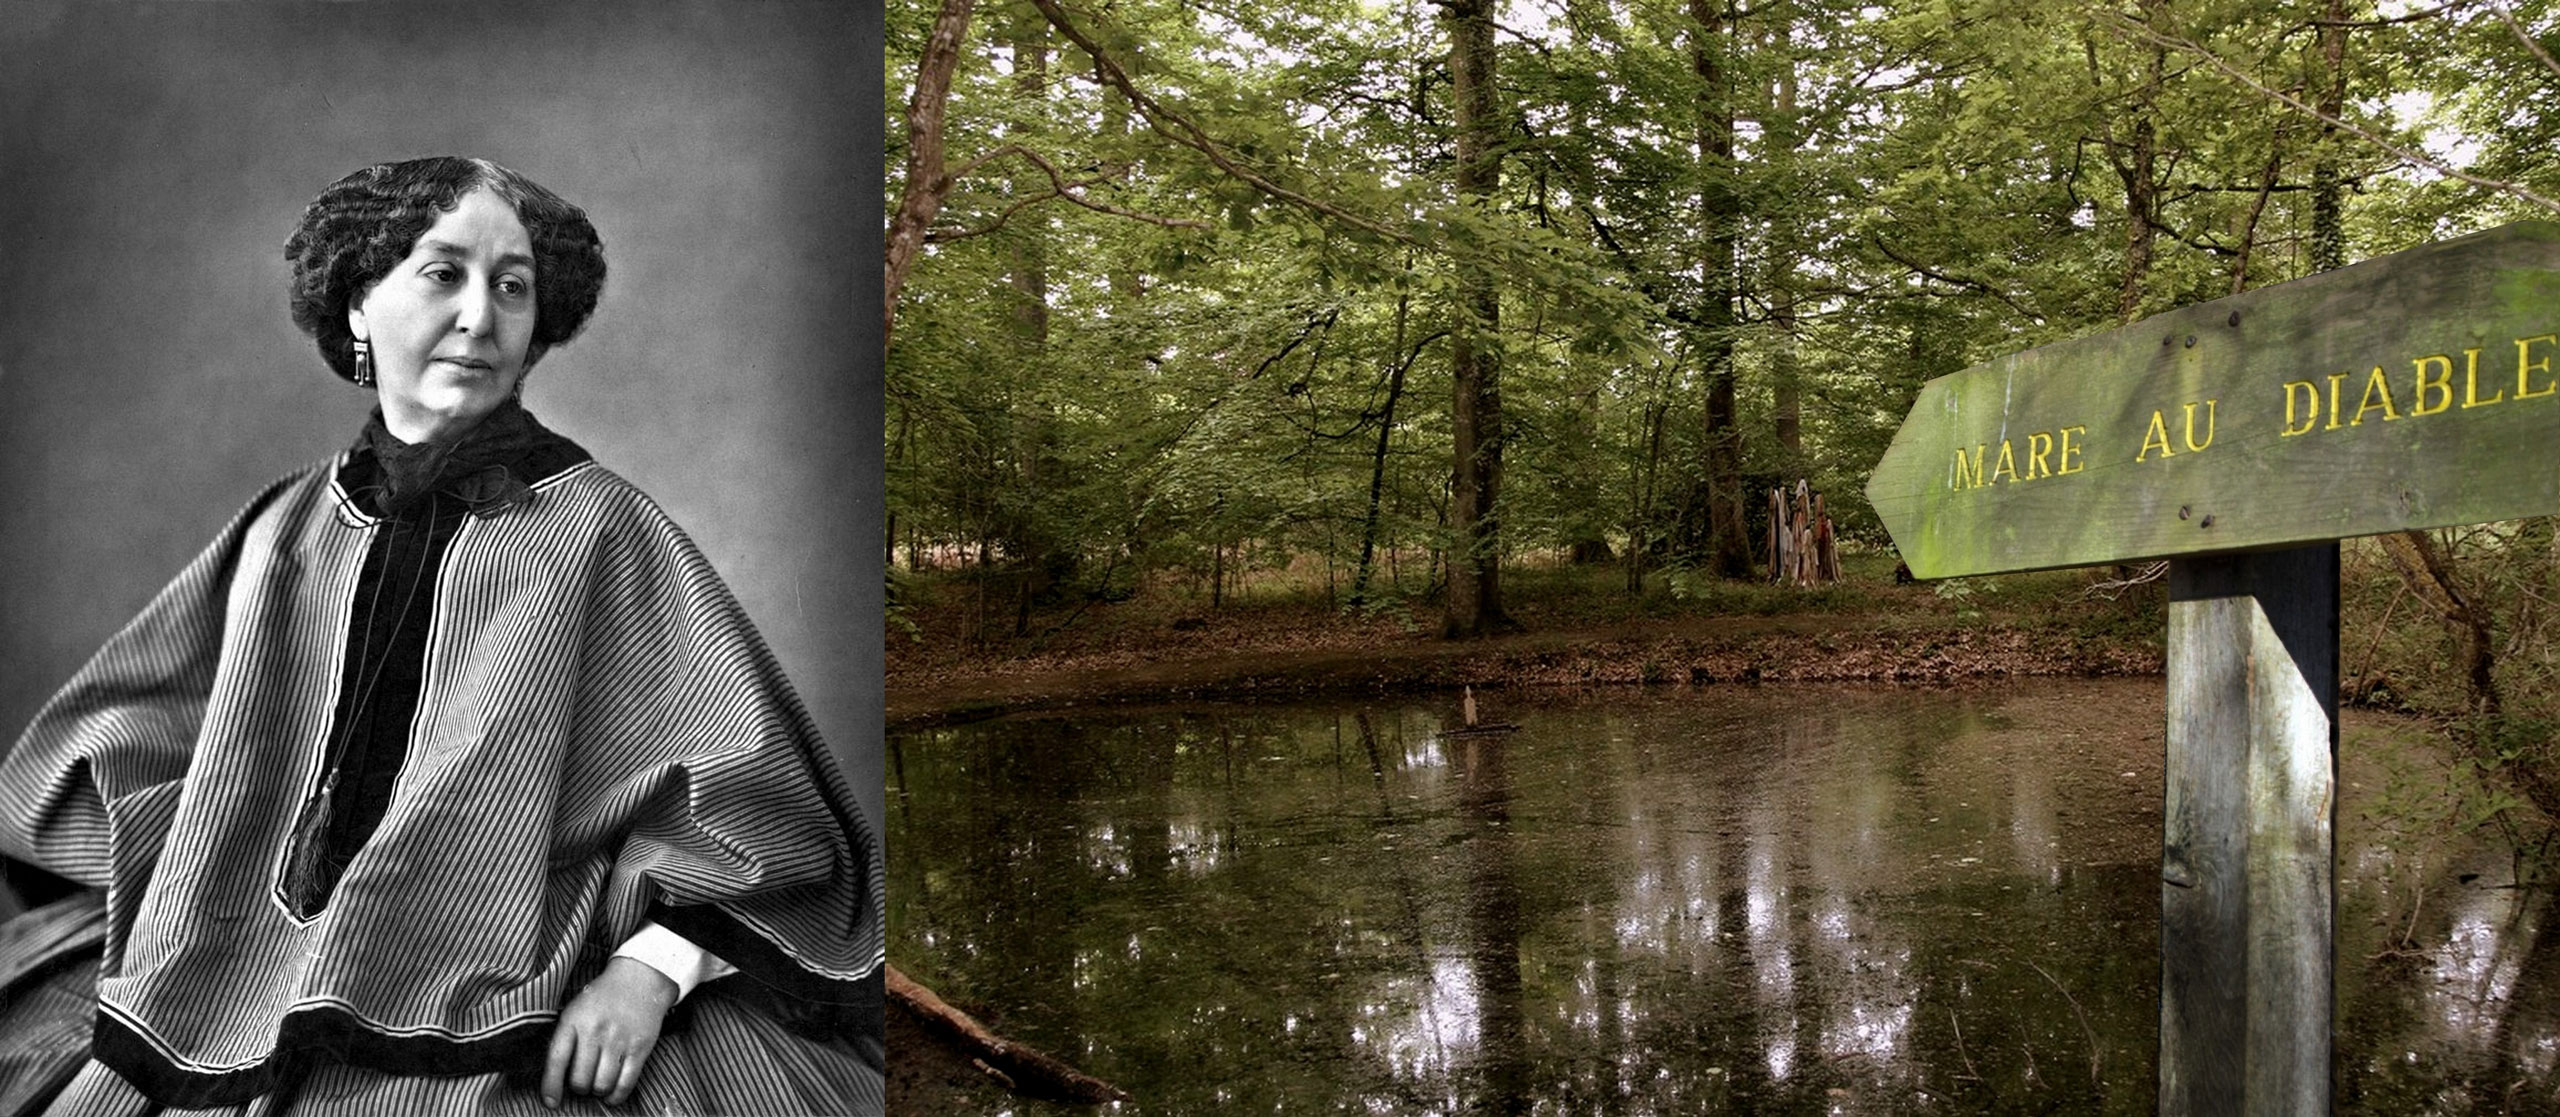 George Sand, la grande dame du Berry, et sa fameuse « mare au diable » (ou ce qu’il en reste aujourd’hui), située à seulement 17 km de Bommiers. <br><br>